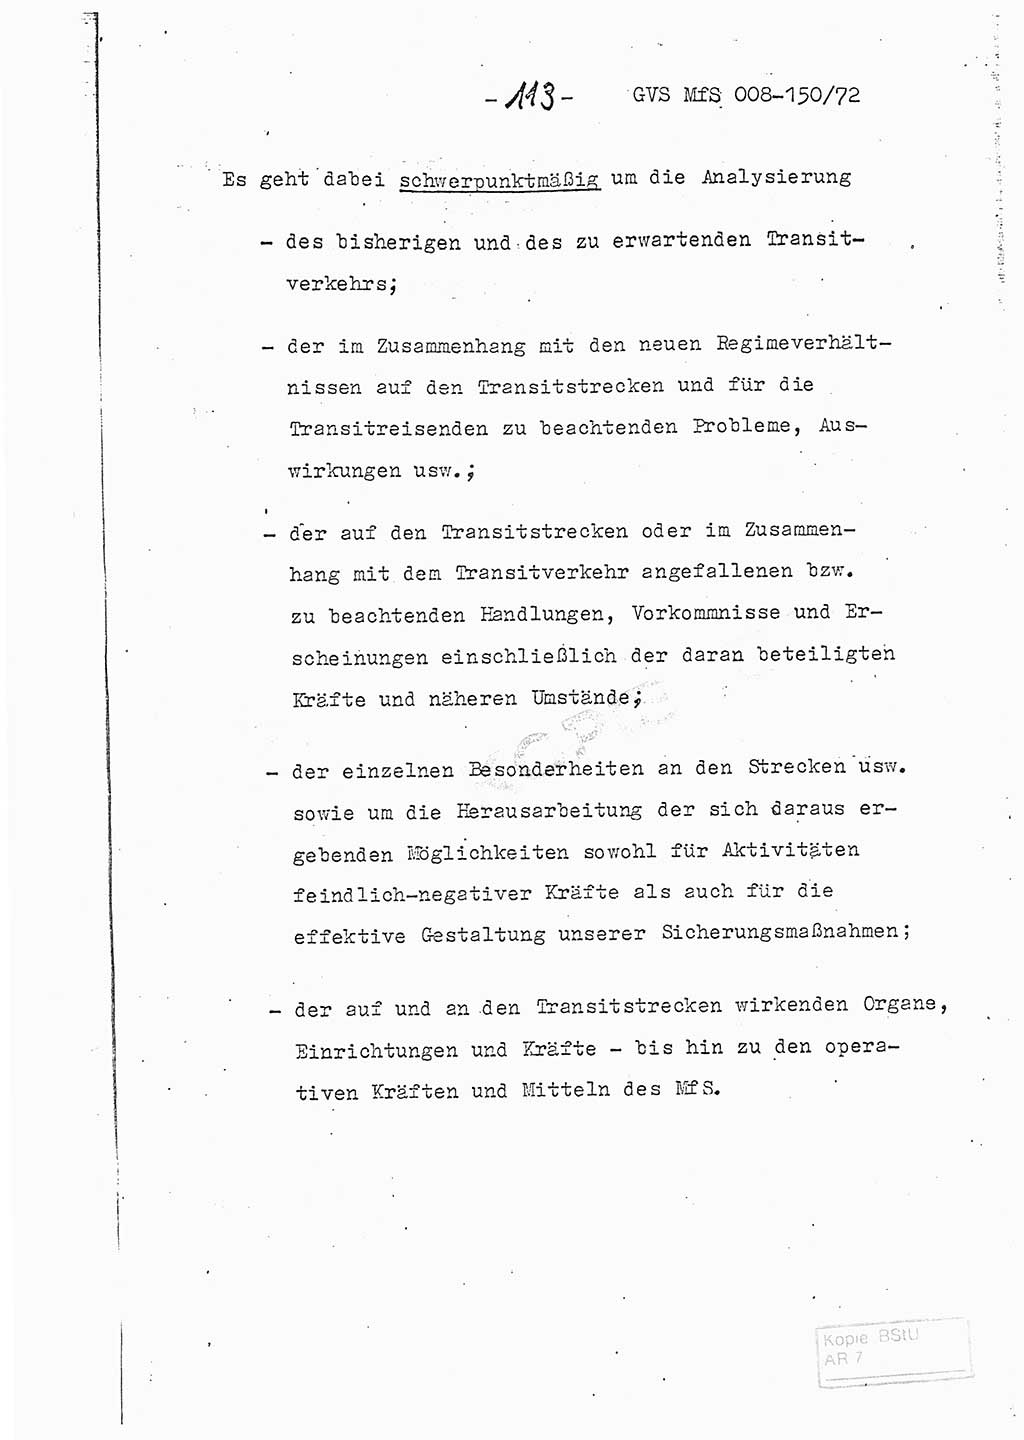 Referat (Entwurf) des Genossen Minister (Generaloberst Erich Mielke) auf der Dienstkonferenz 1972, Ministerium für Staatssicherheit (MfS) [Deutsche Demokratische Republik (DDR)], Der Minister, Geheime Verschlußsache (GVS) 008-150/72, Berlin 25.2.1972, Seite 113 (Ref. Entw. DK MfS DDR Min. GVS 008-150/72 1972, S. 113)